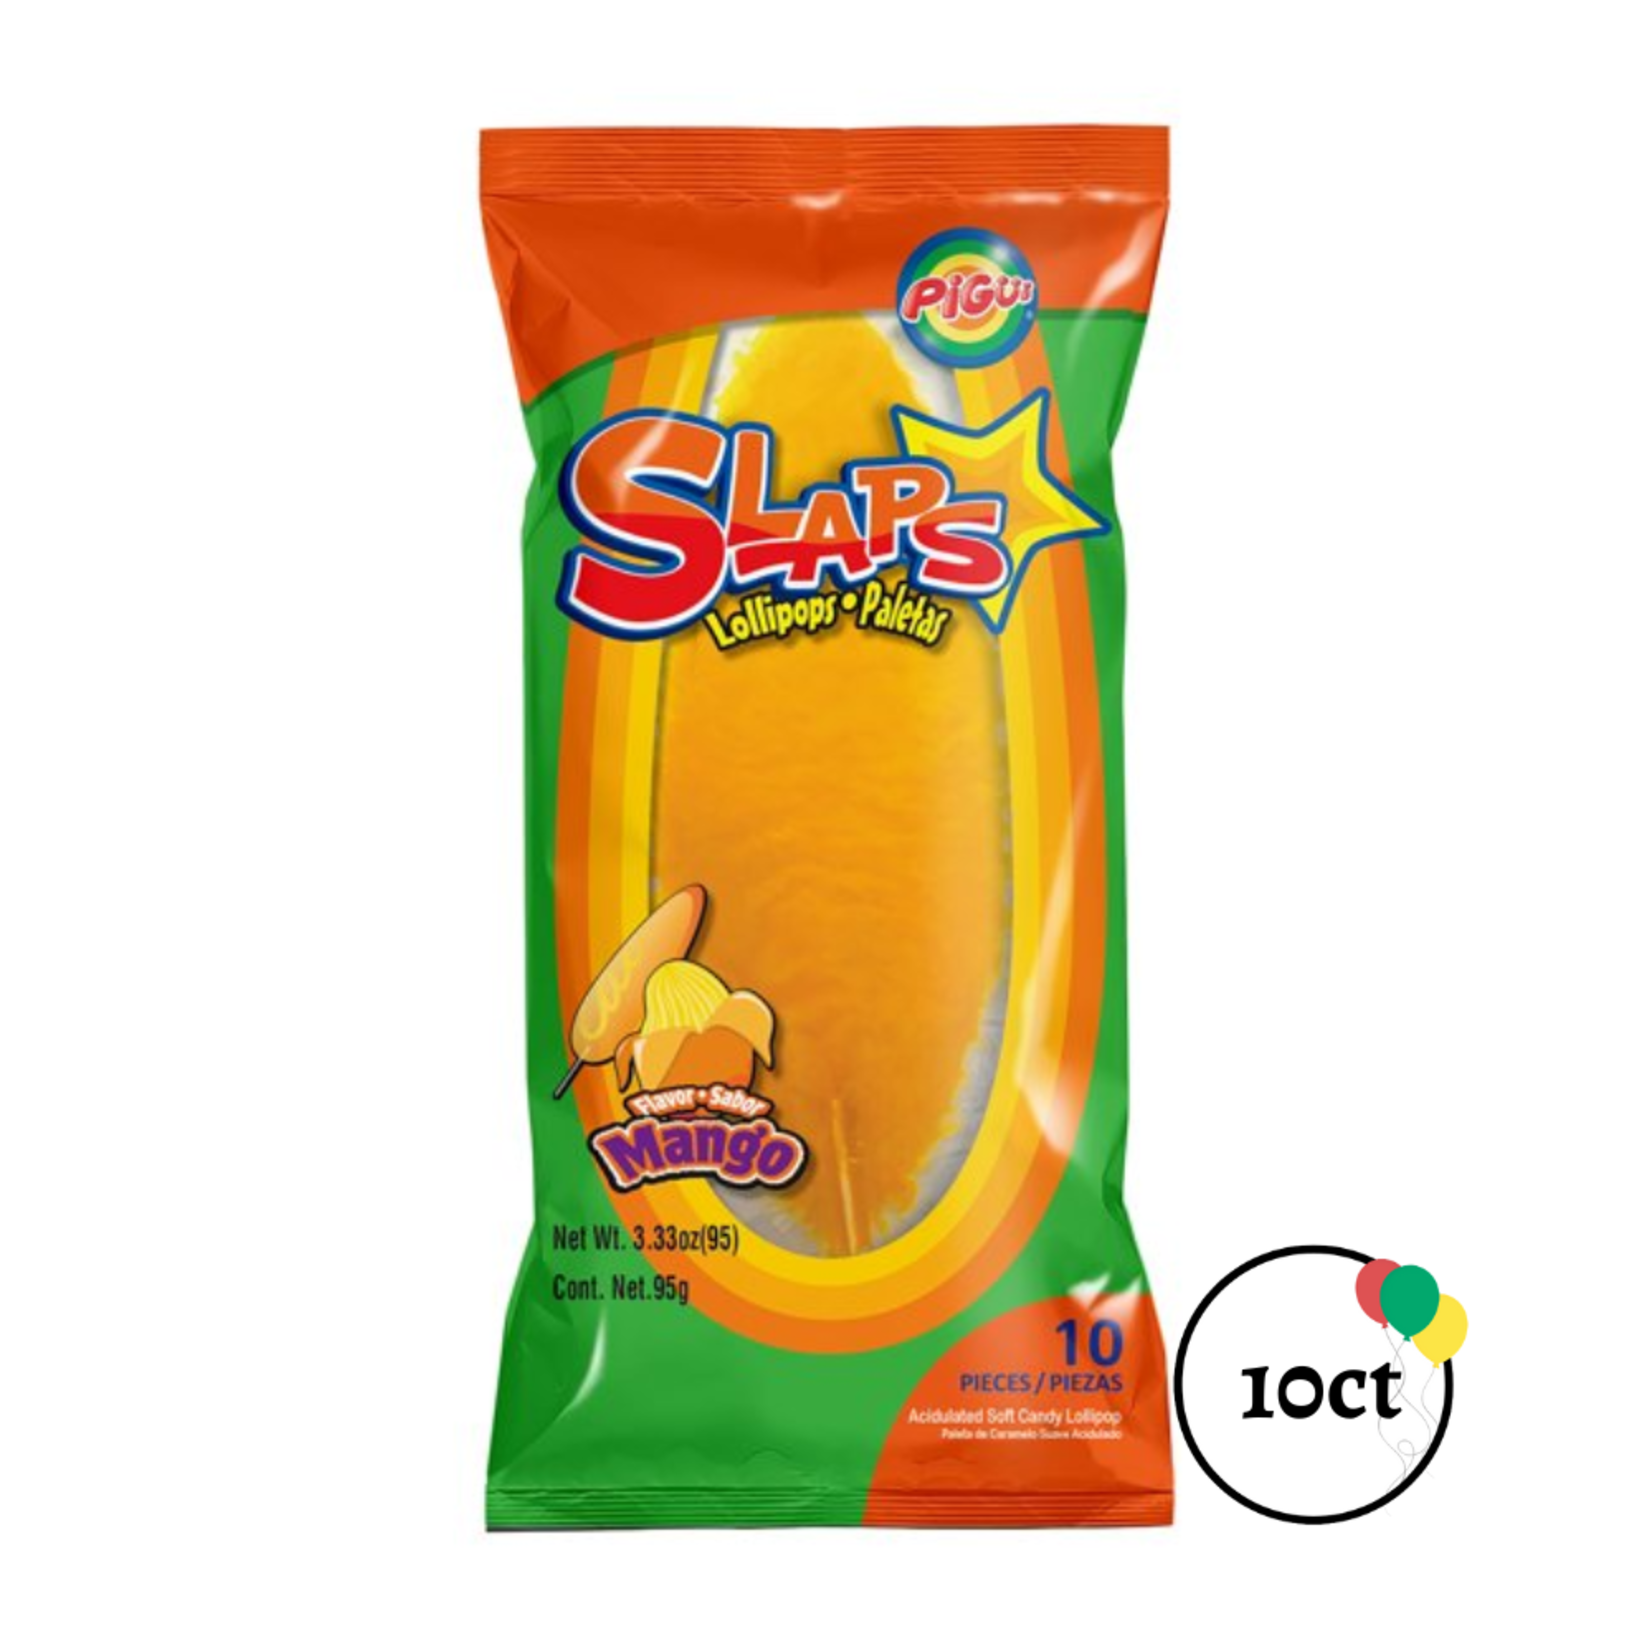 Pigui Slaps 10ct Mango